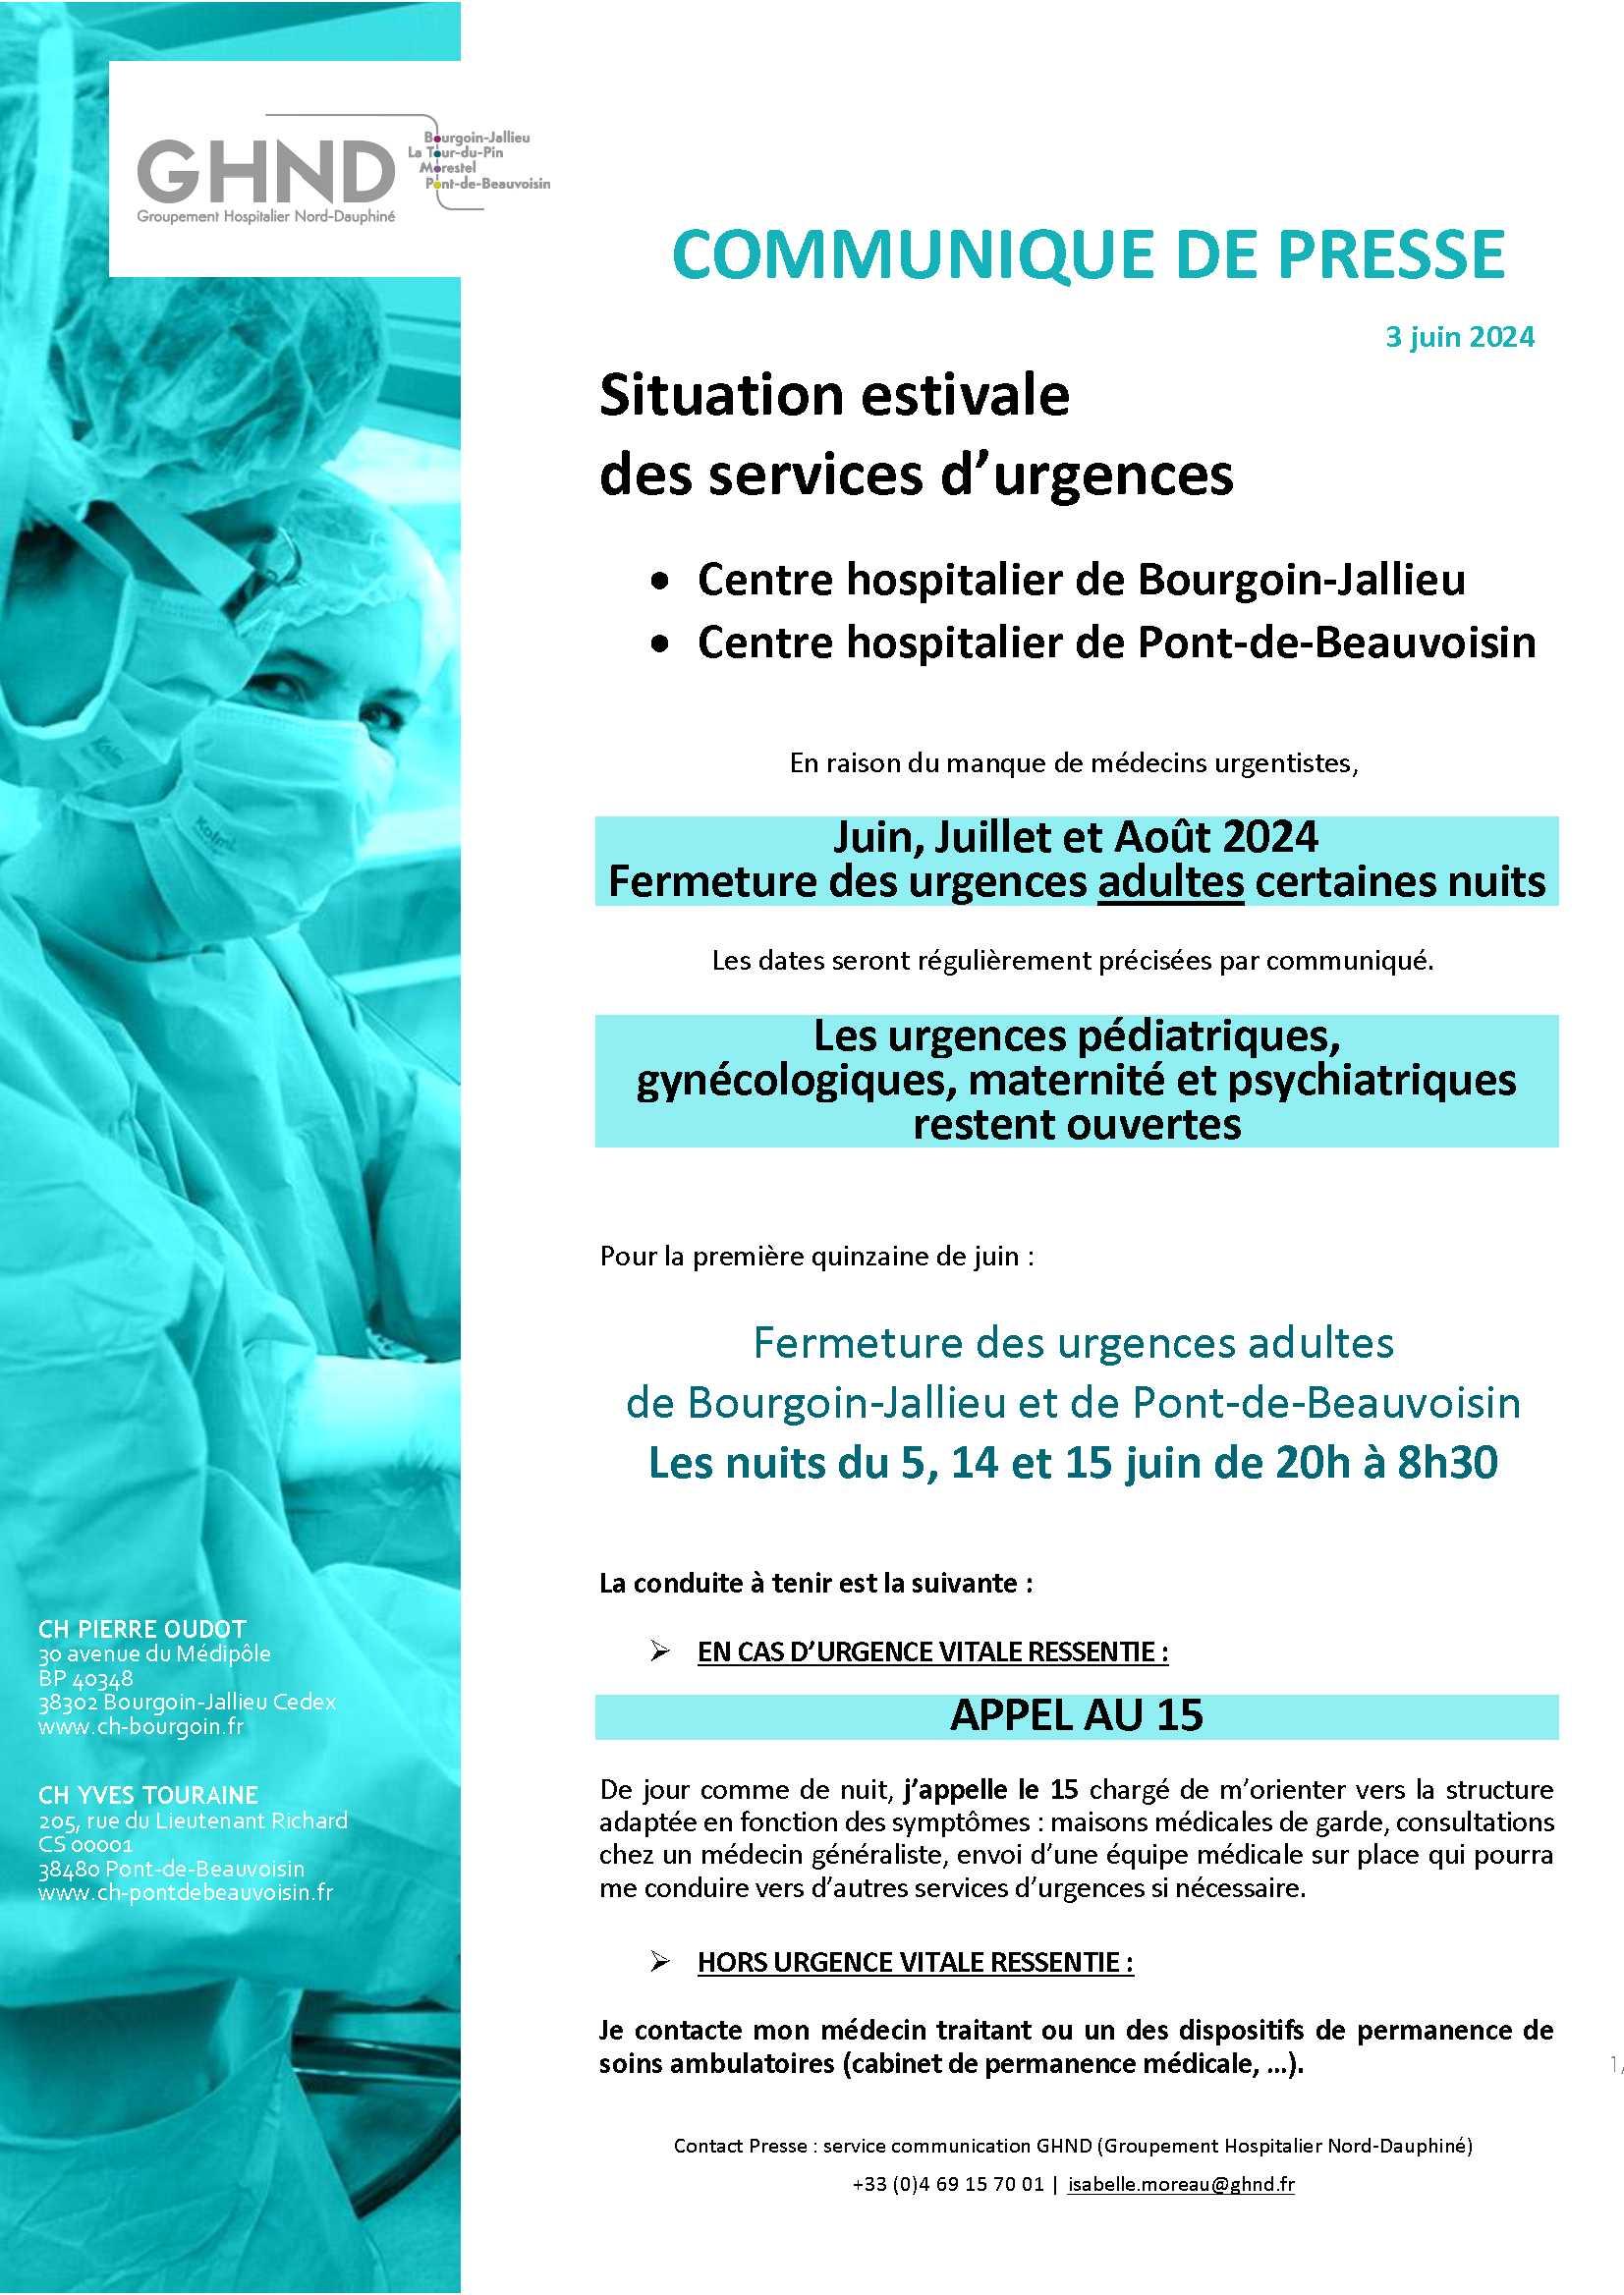 Image de couverture - Fermeture des services des urgences des Centres Hospitaliers de Bourgoin-Jallieu et de Pont de Beauvoisin (période estivale – manque de médecins urgentistes).